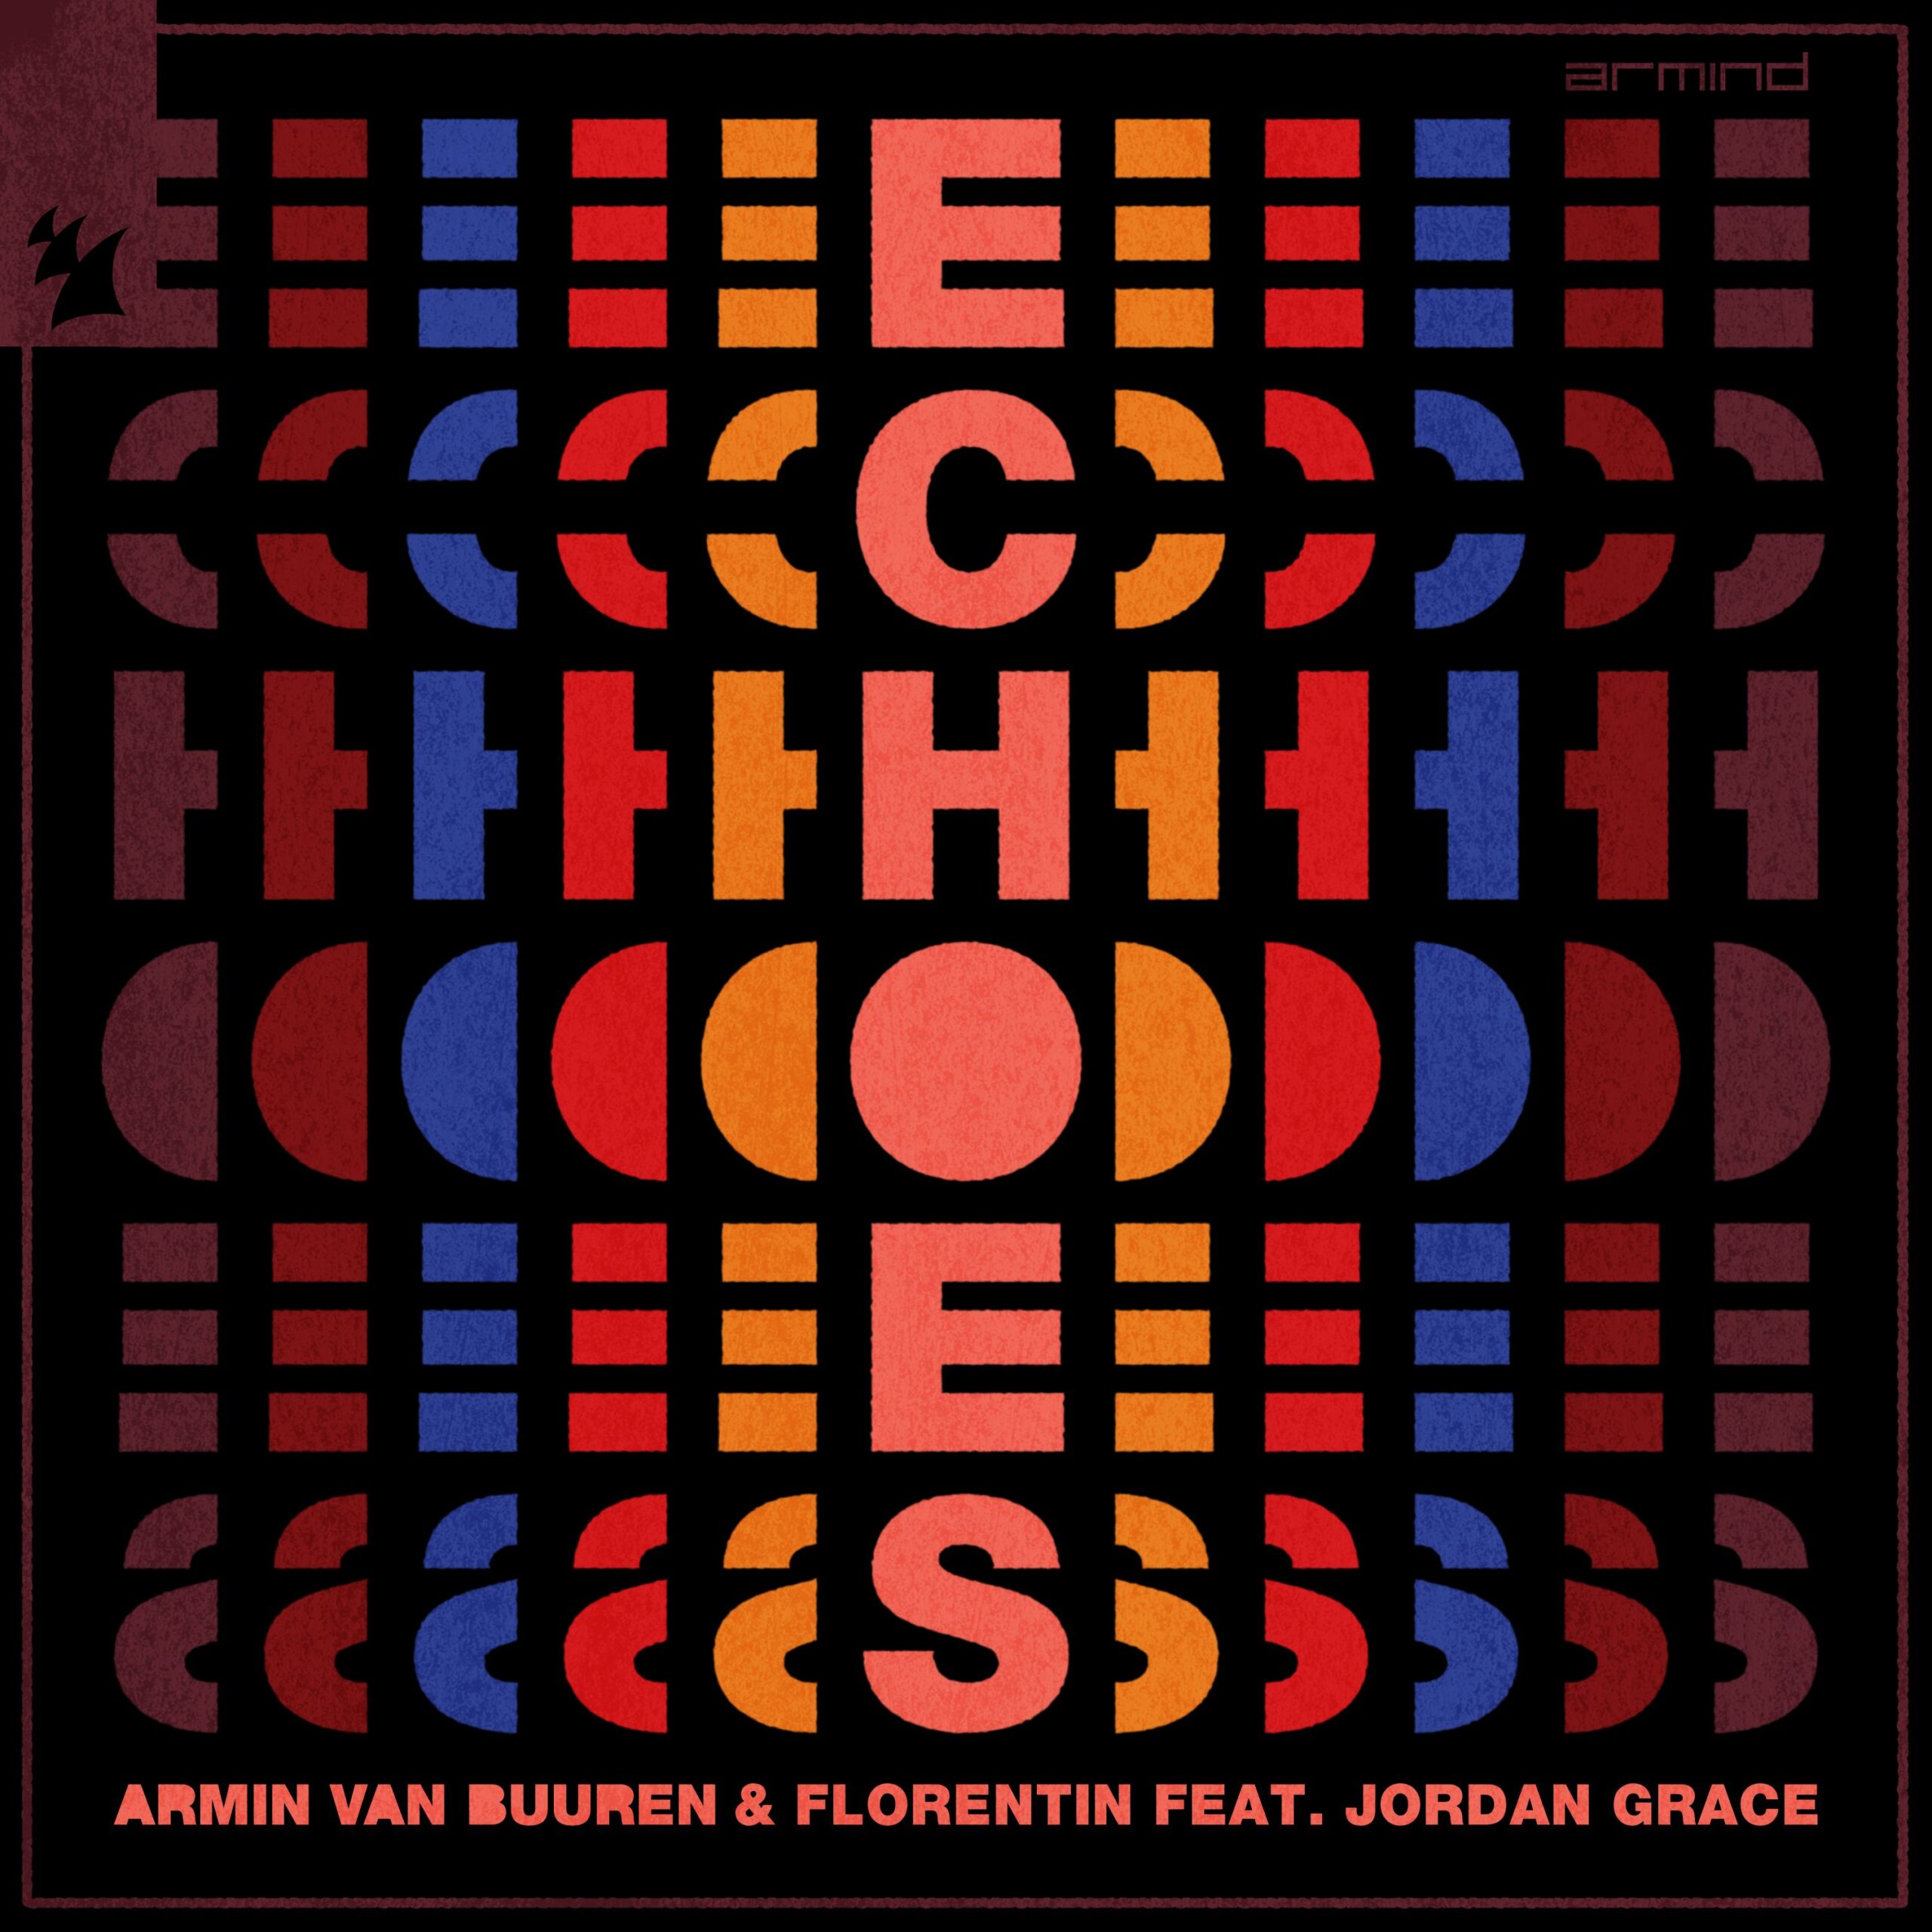 Armin van Buuren and Florentin feat. Jordan Grace presents Echoes on Armind